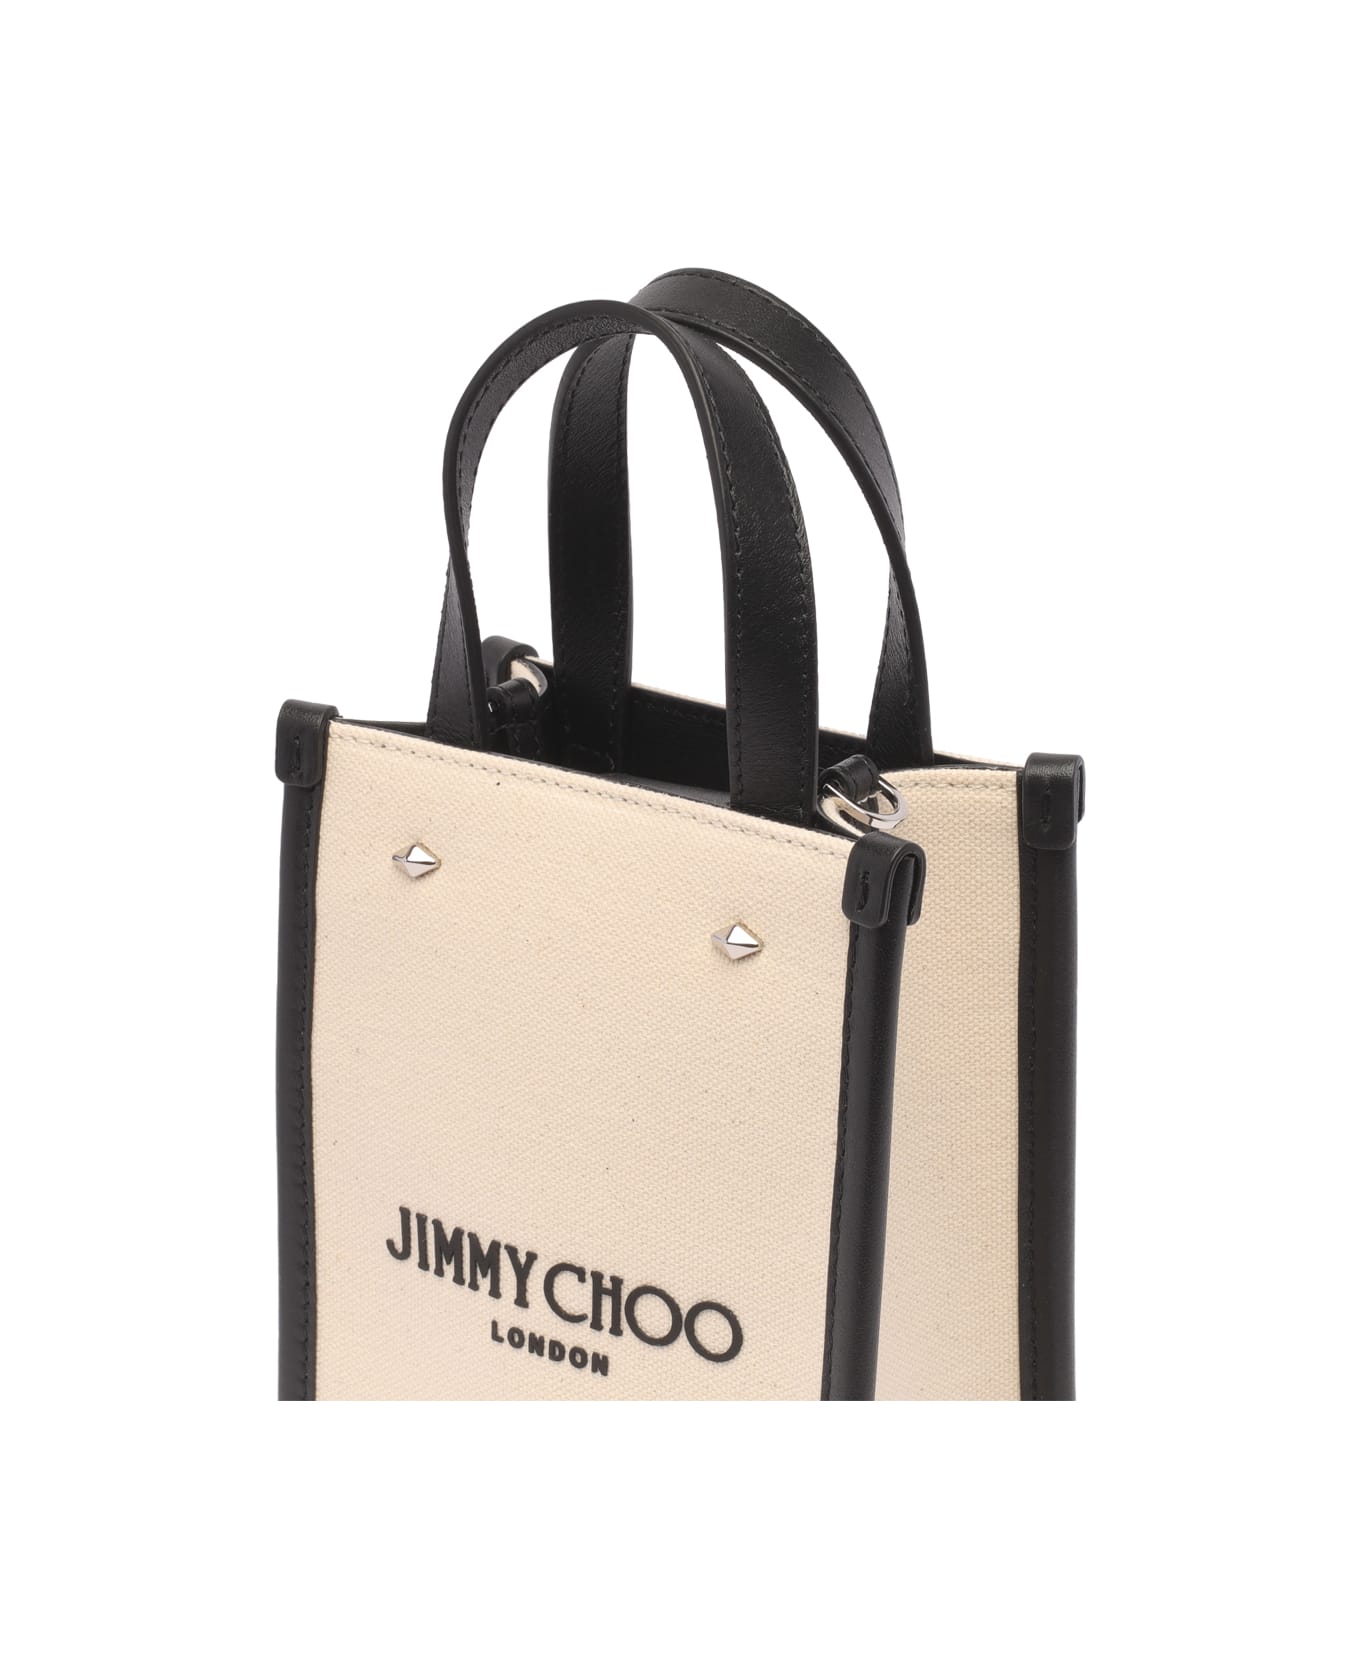 Jimmy Choo Mini N/s Tote - Beige トートバッグ